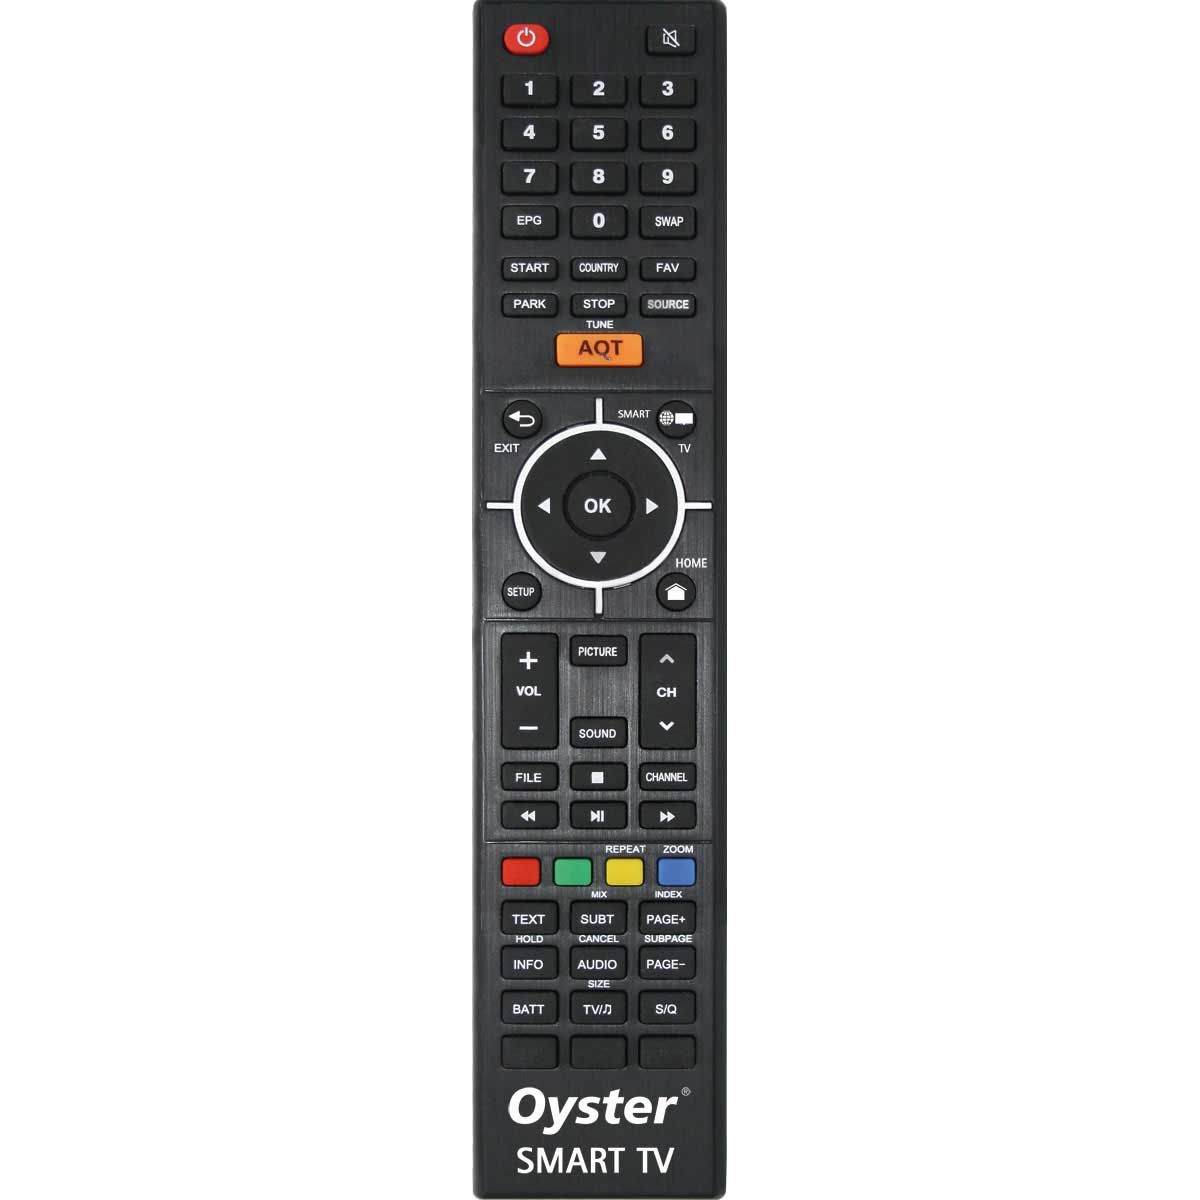 TEN HAAFT Oyster 70 Premium Sat-Anlage TWIN mit Smart TV 27 ZolL - 87536 - 88296